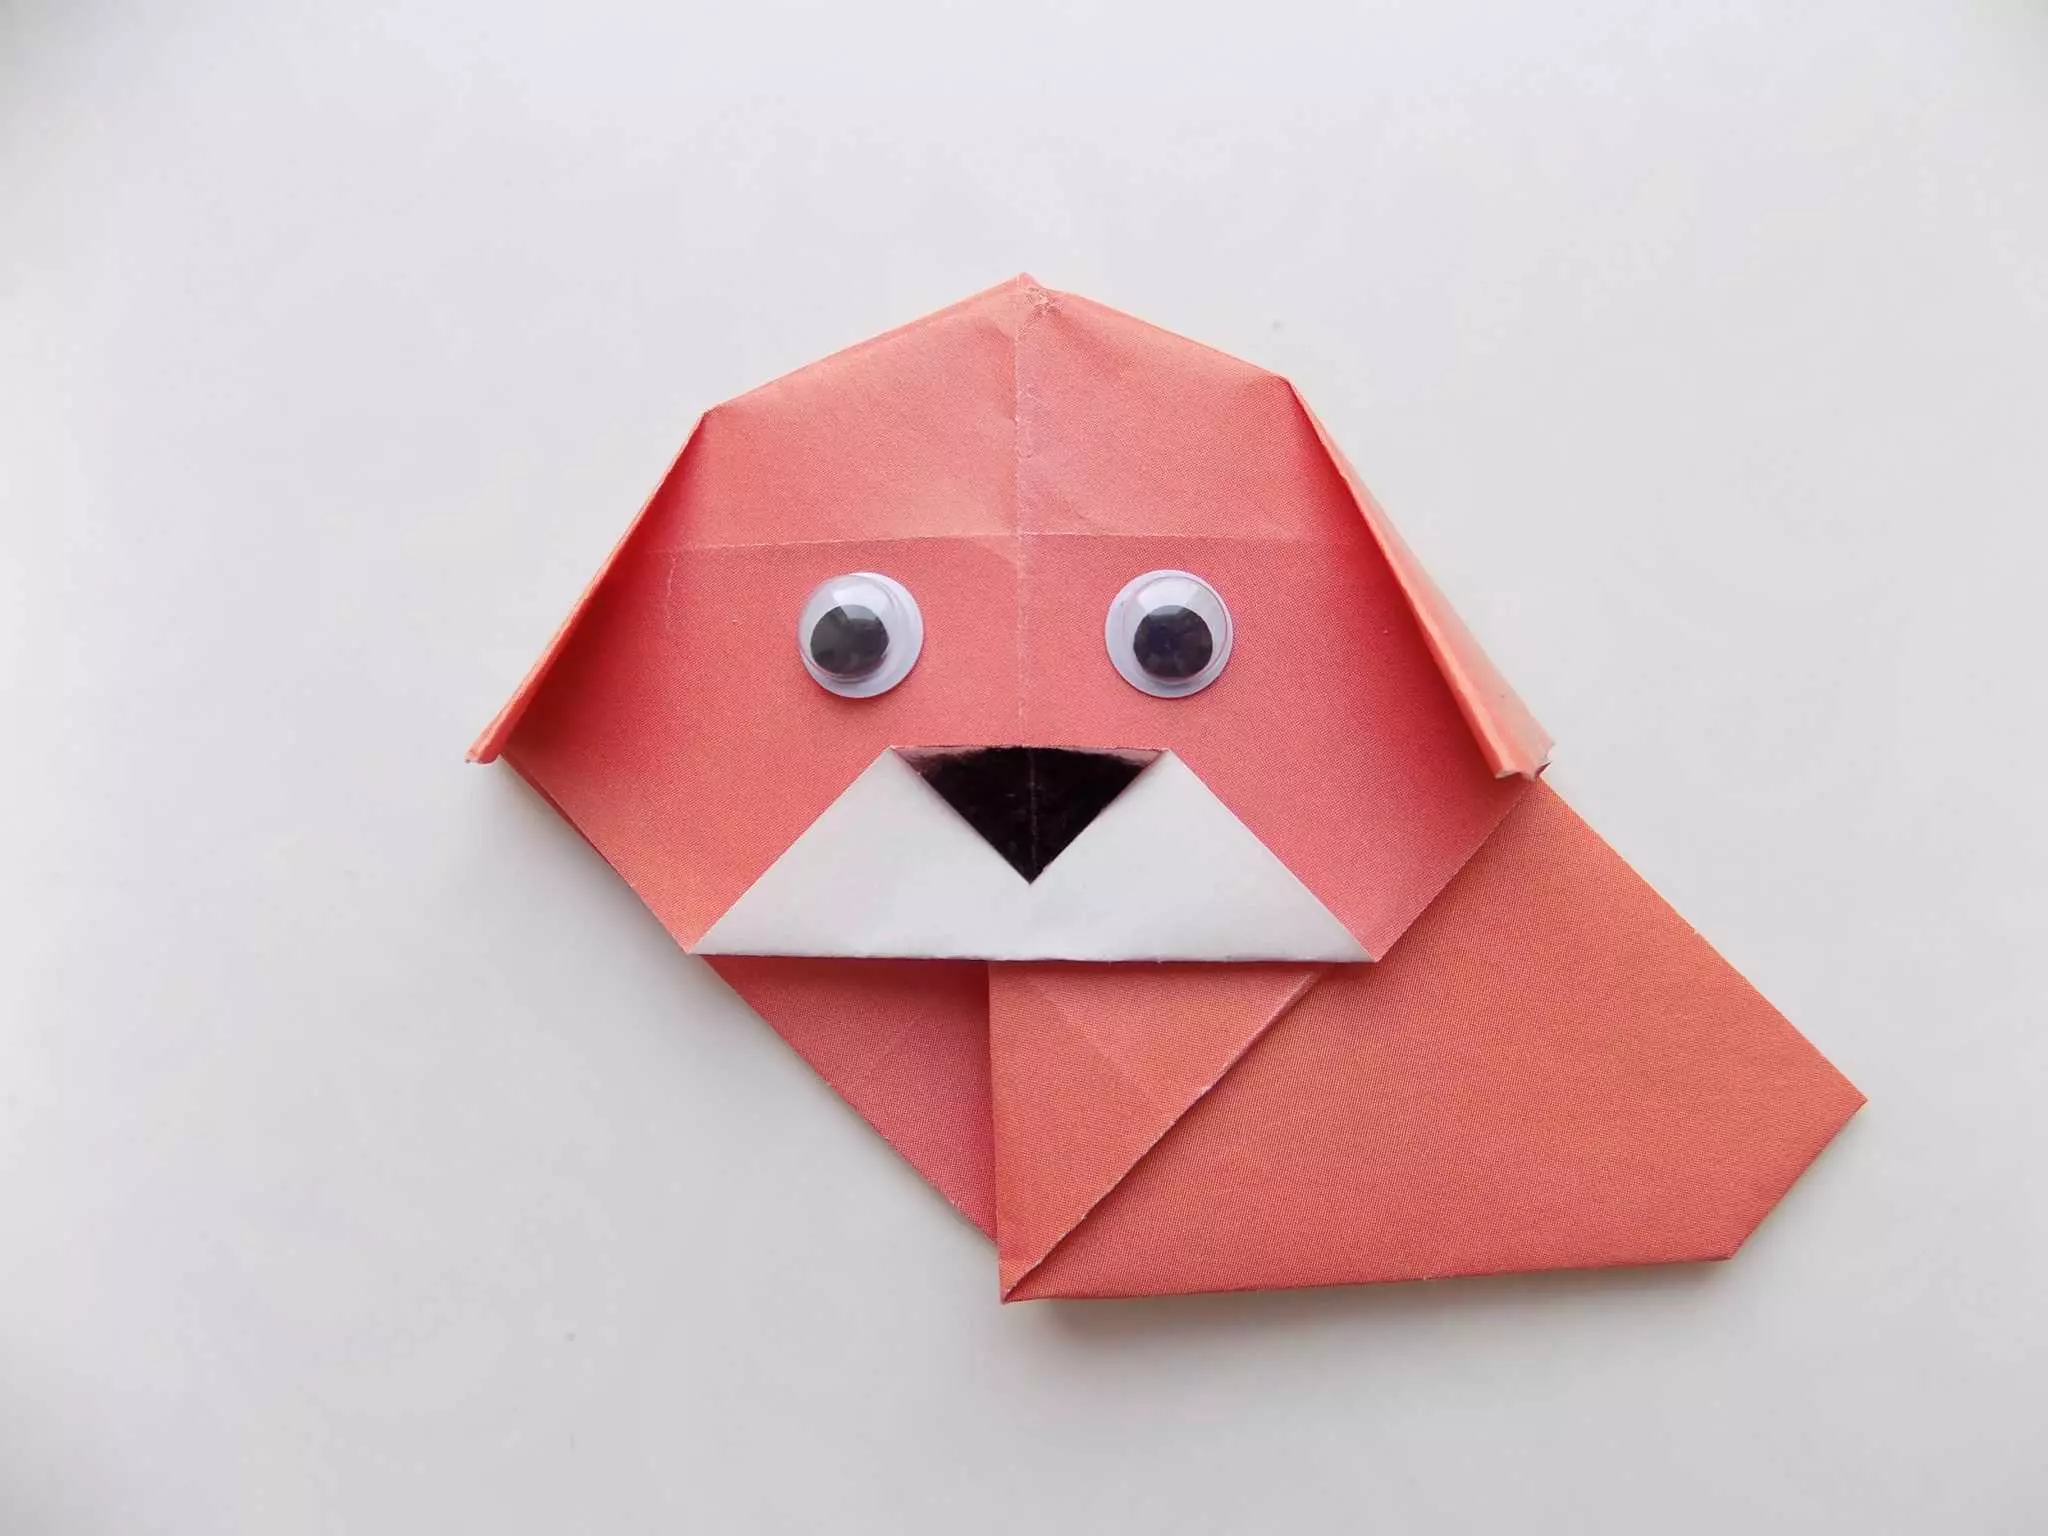 Impapuro Origami kubana 7-8: Gahunda yoroshye kubahungu nabakobwa. Nigute wakora origami ubikore wenyine mubyiciro? 26984_47